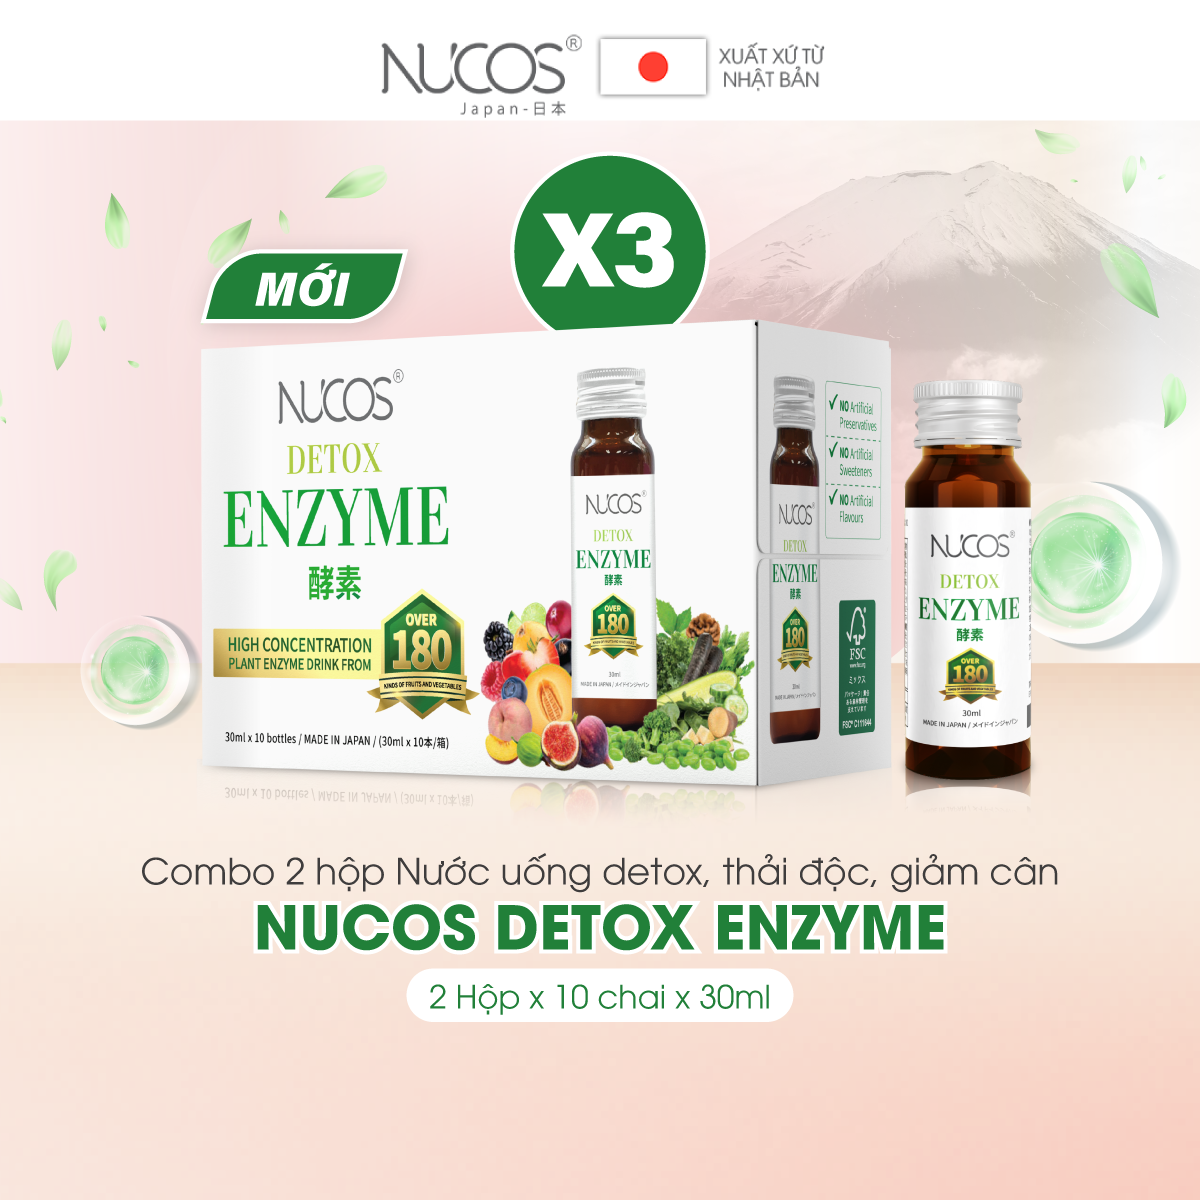 Combo 3 hộp nước uống thải độc Nucos Detox Enzyme 30ml x 30 chai